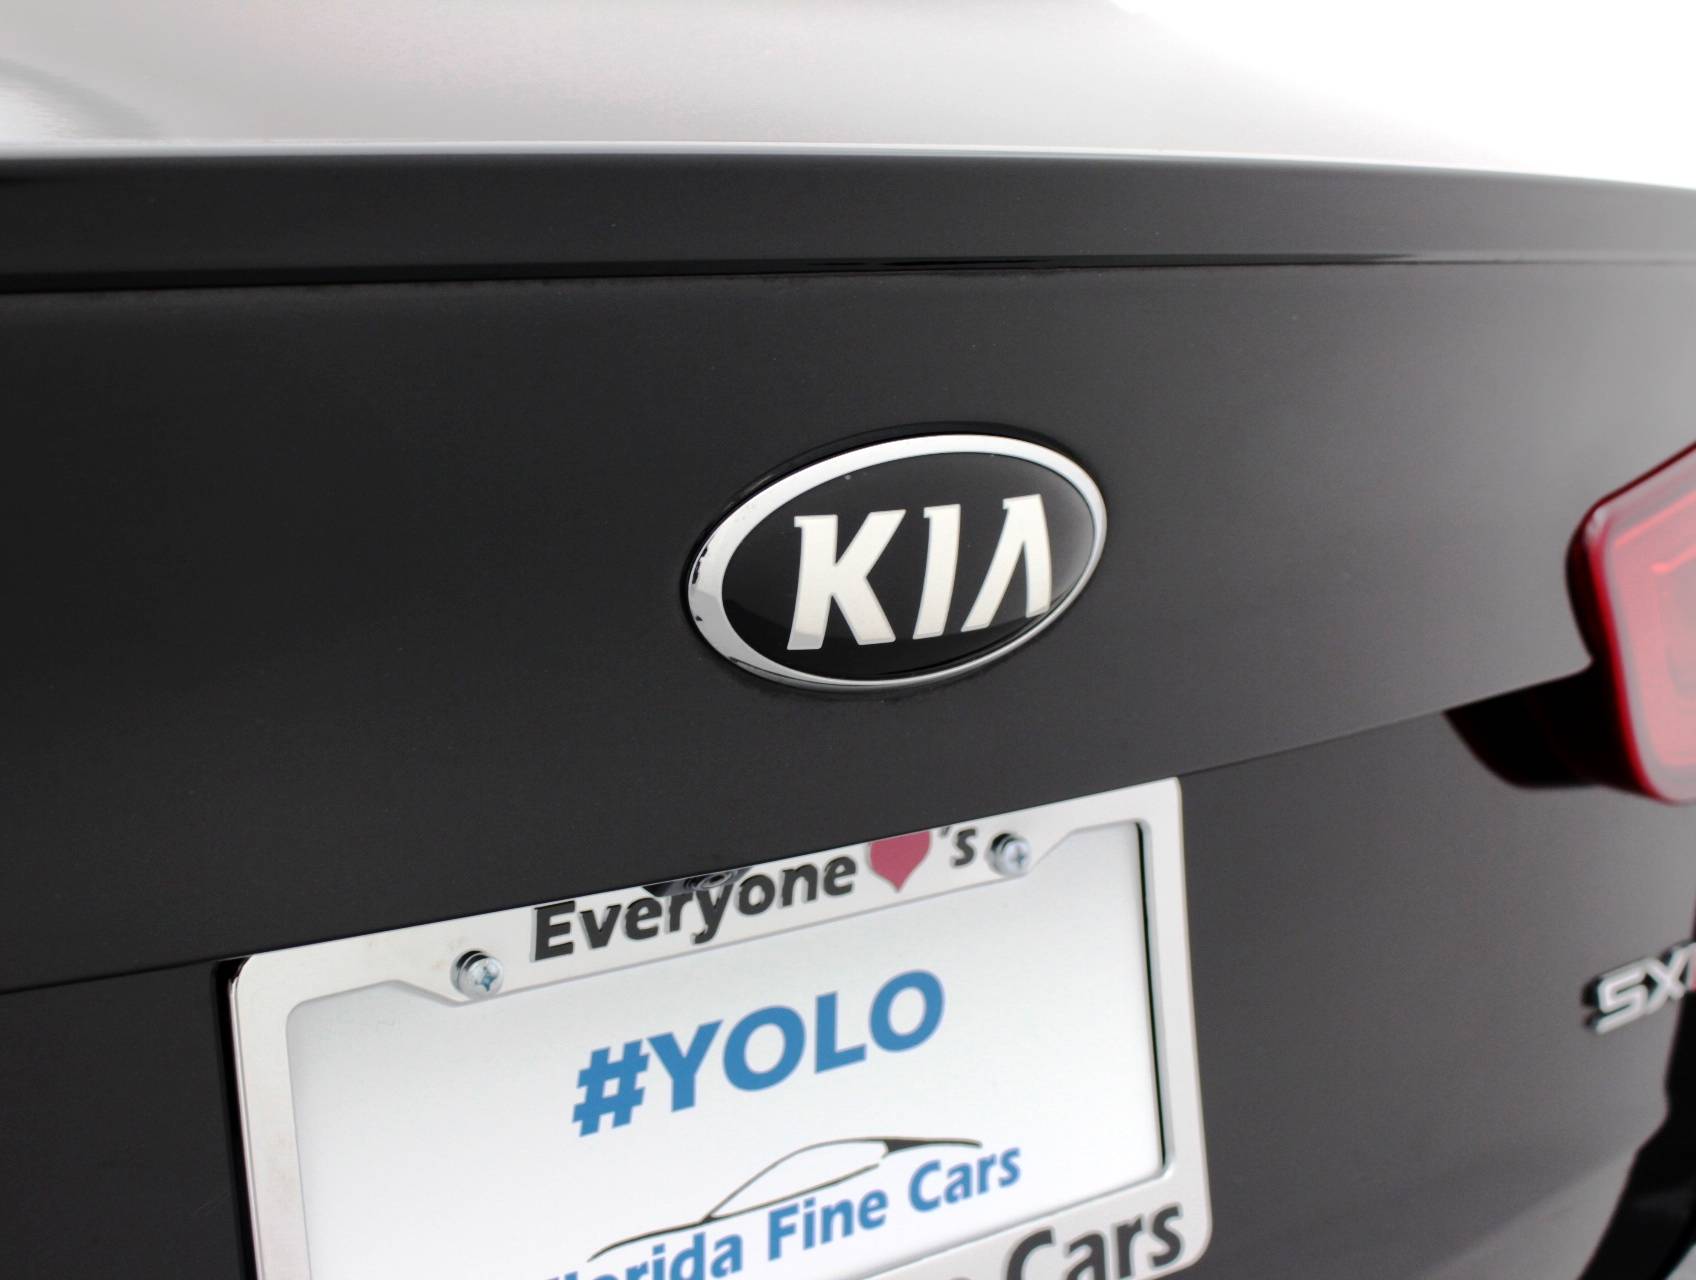 Florida Fine Cars - Used KIA OPTIMA 2015 MIAMI Sxl